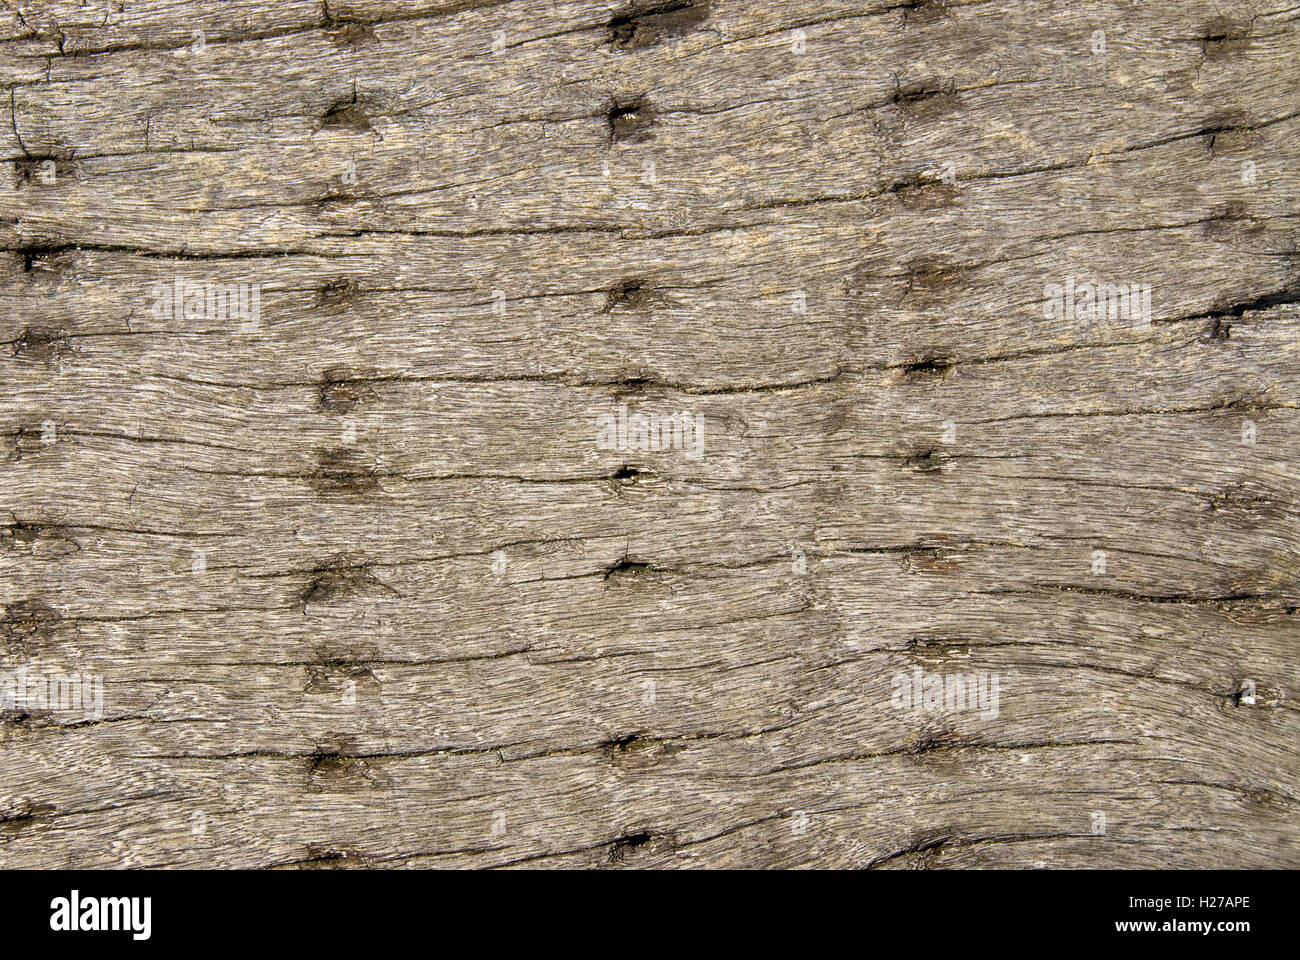 serie de agujeros en madera vieja Foto de stock